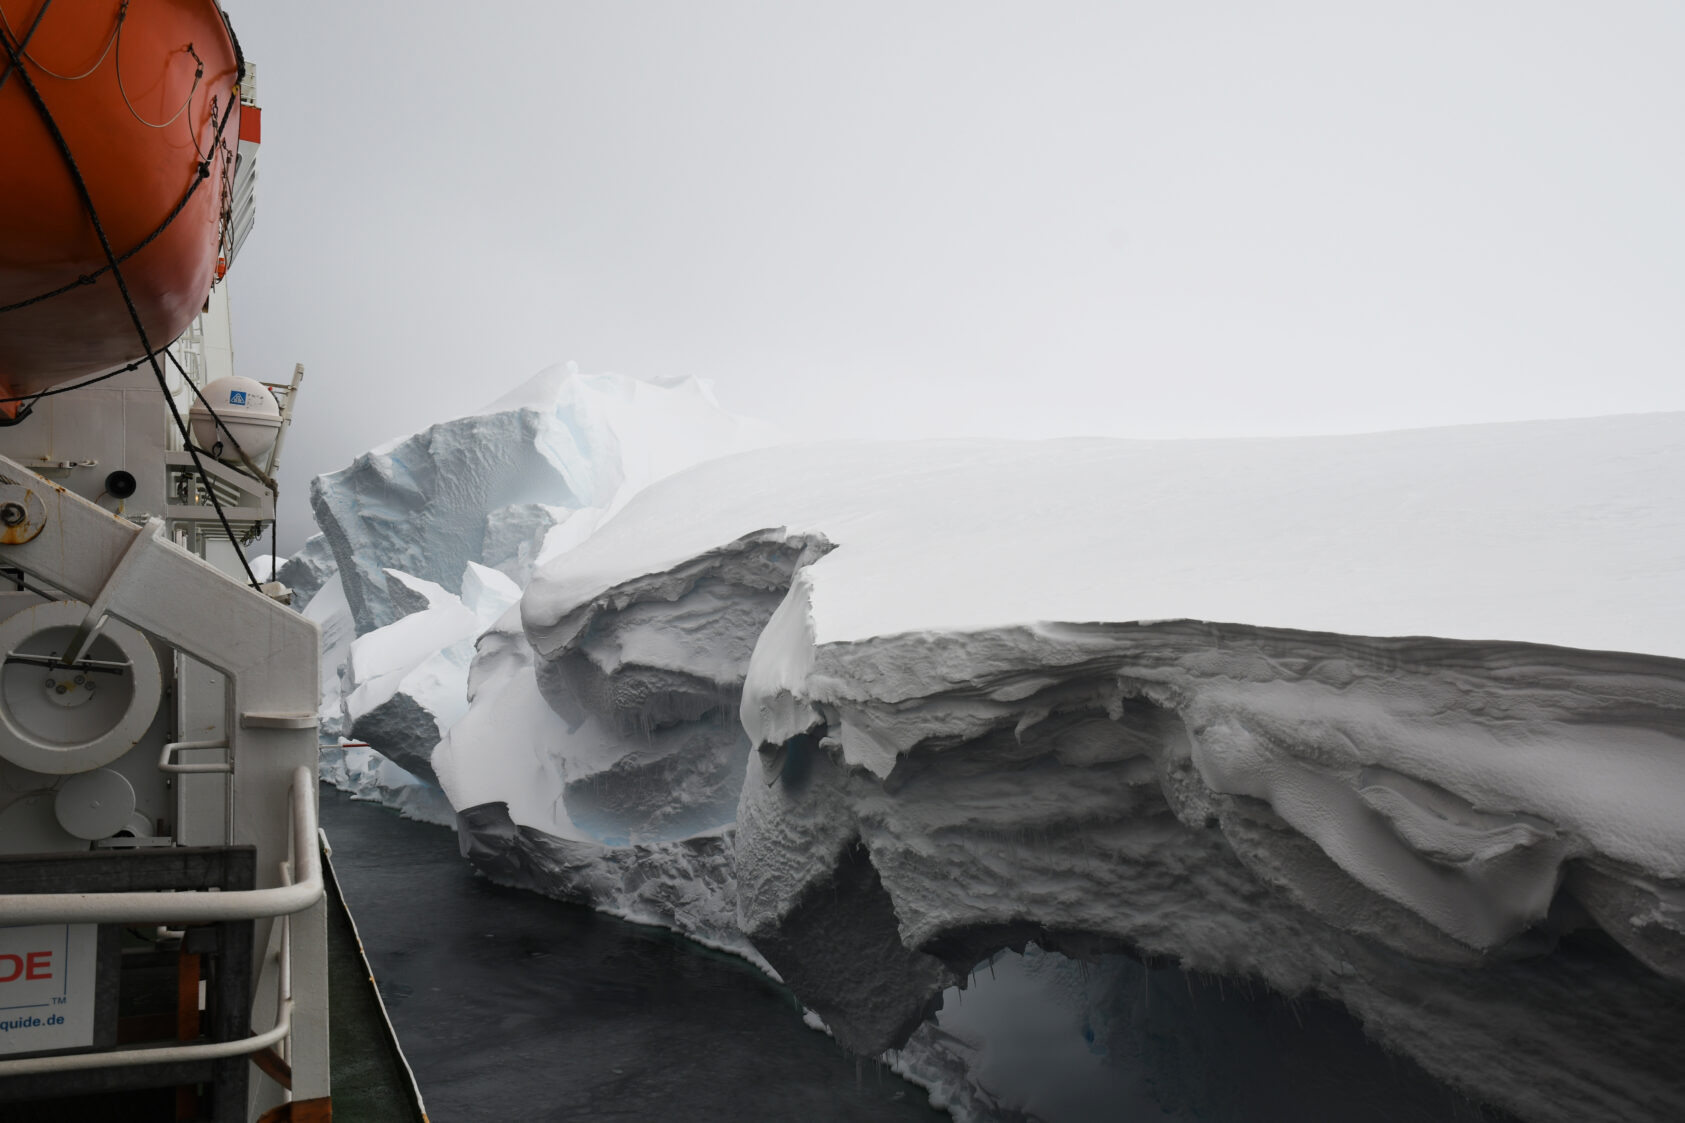 Svein Østerhus, Forskningsskipet Polarstern i ferd med å fortøye ved en del av Ekström-bremmen, for å å levere proviant til forskningsstasjon. Bildet er tatt ved et forskningstokt i Antarktis i 2018., Polarstern isbrem Eksröm, , 